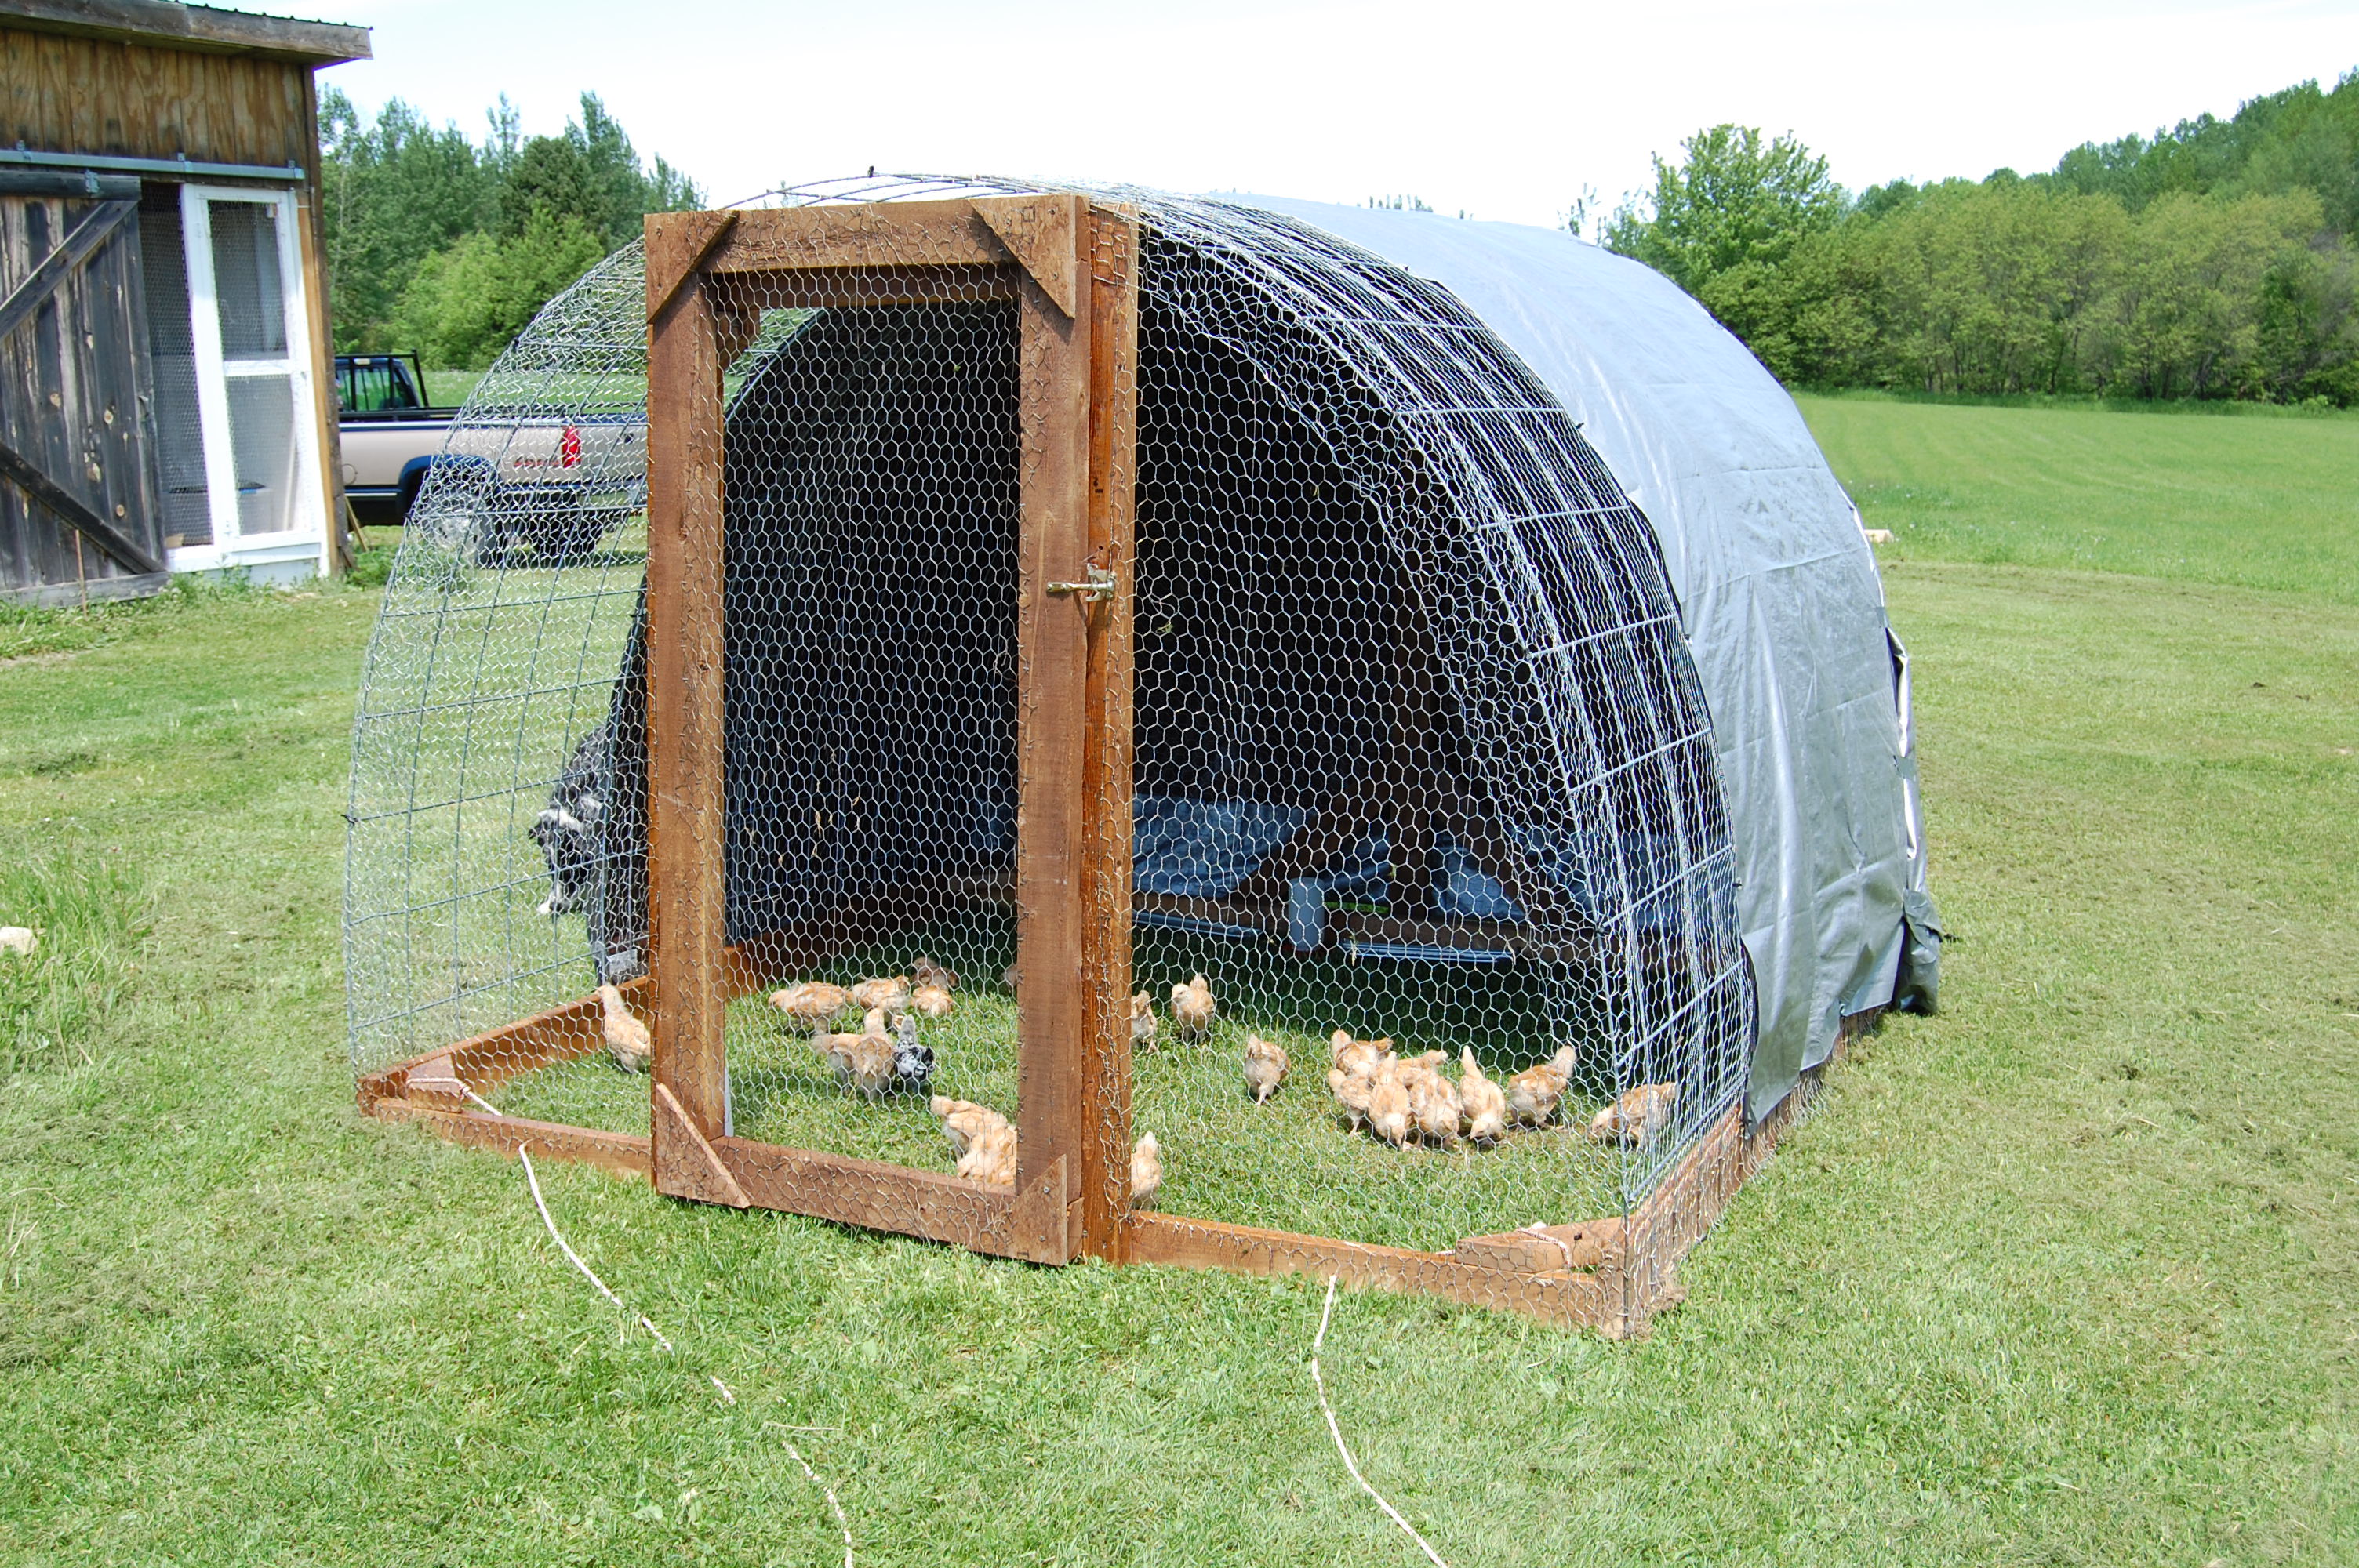 ... chicken co op plans chicken coop building a chicken coop program